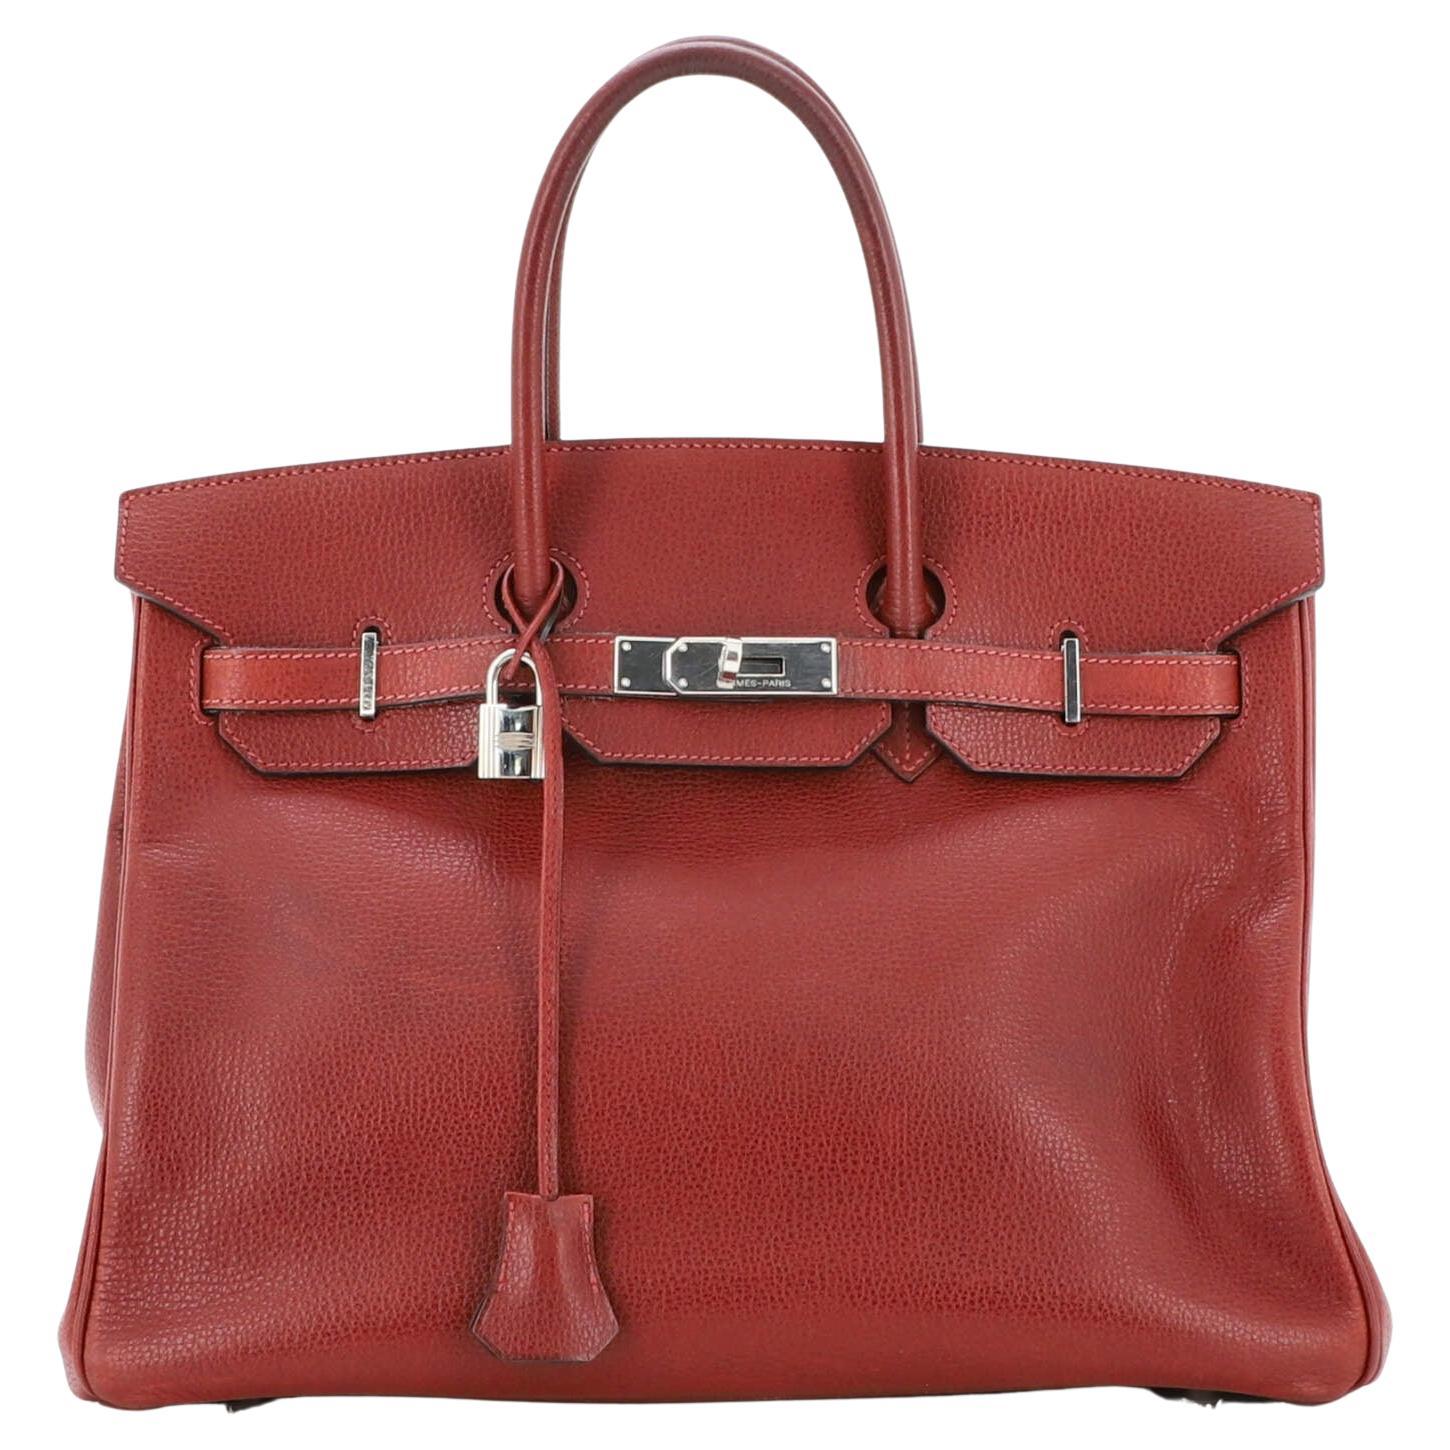 Hermes Birkin Handbag Rouge H Vache Liegee with Palladium Hardware 35